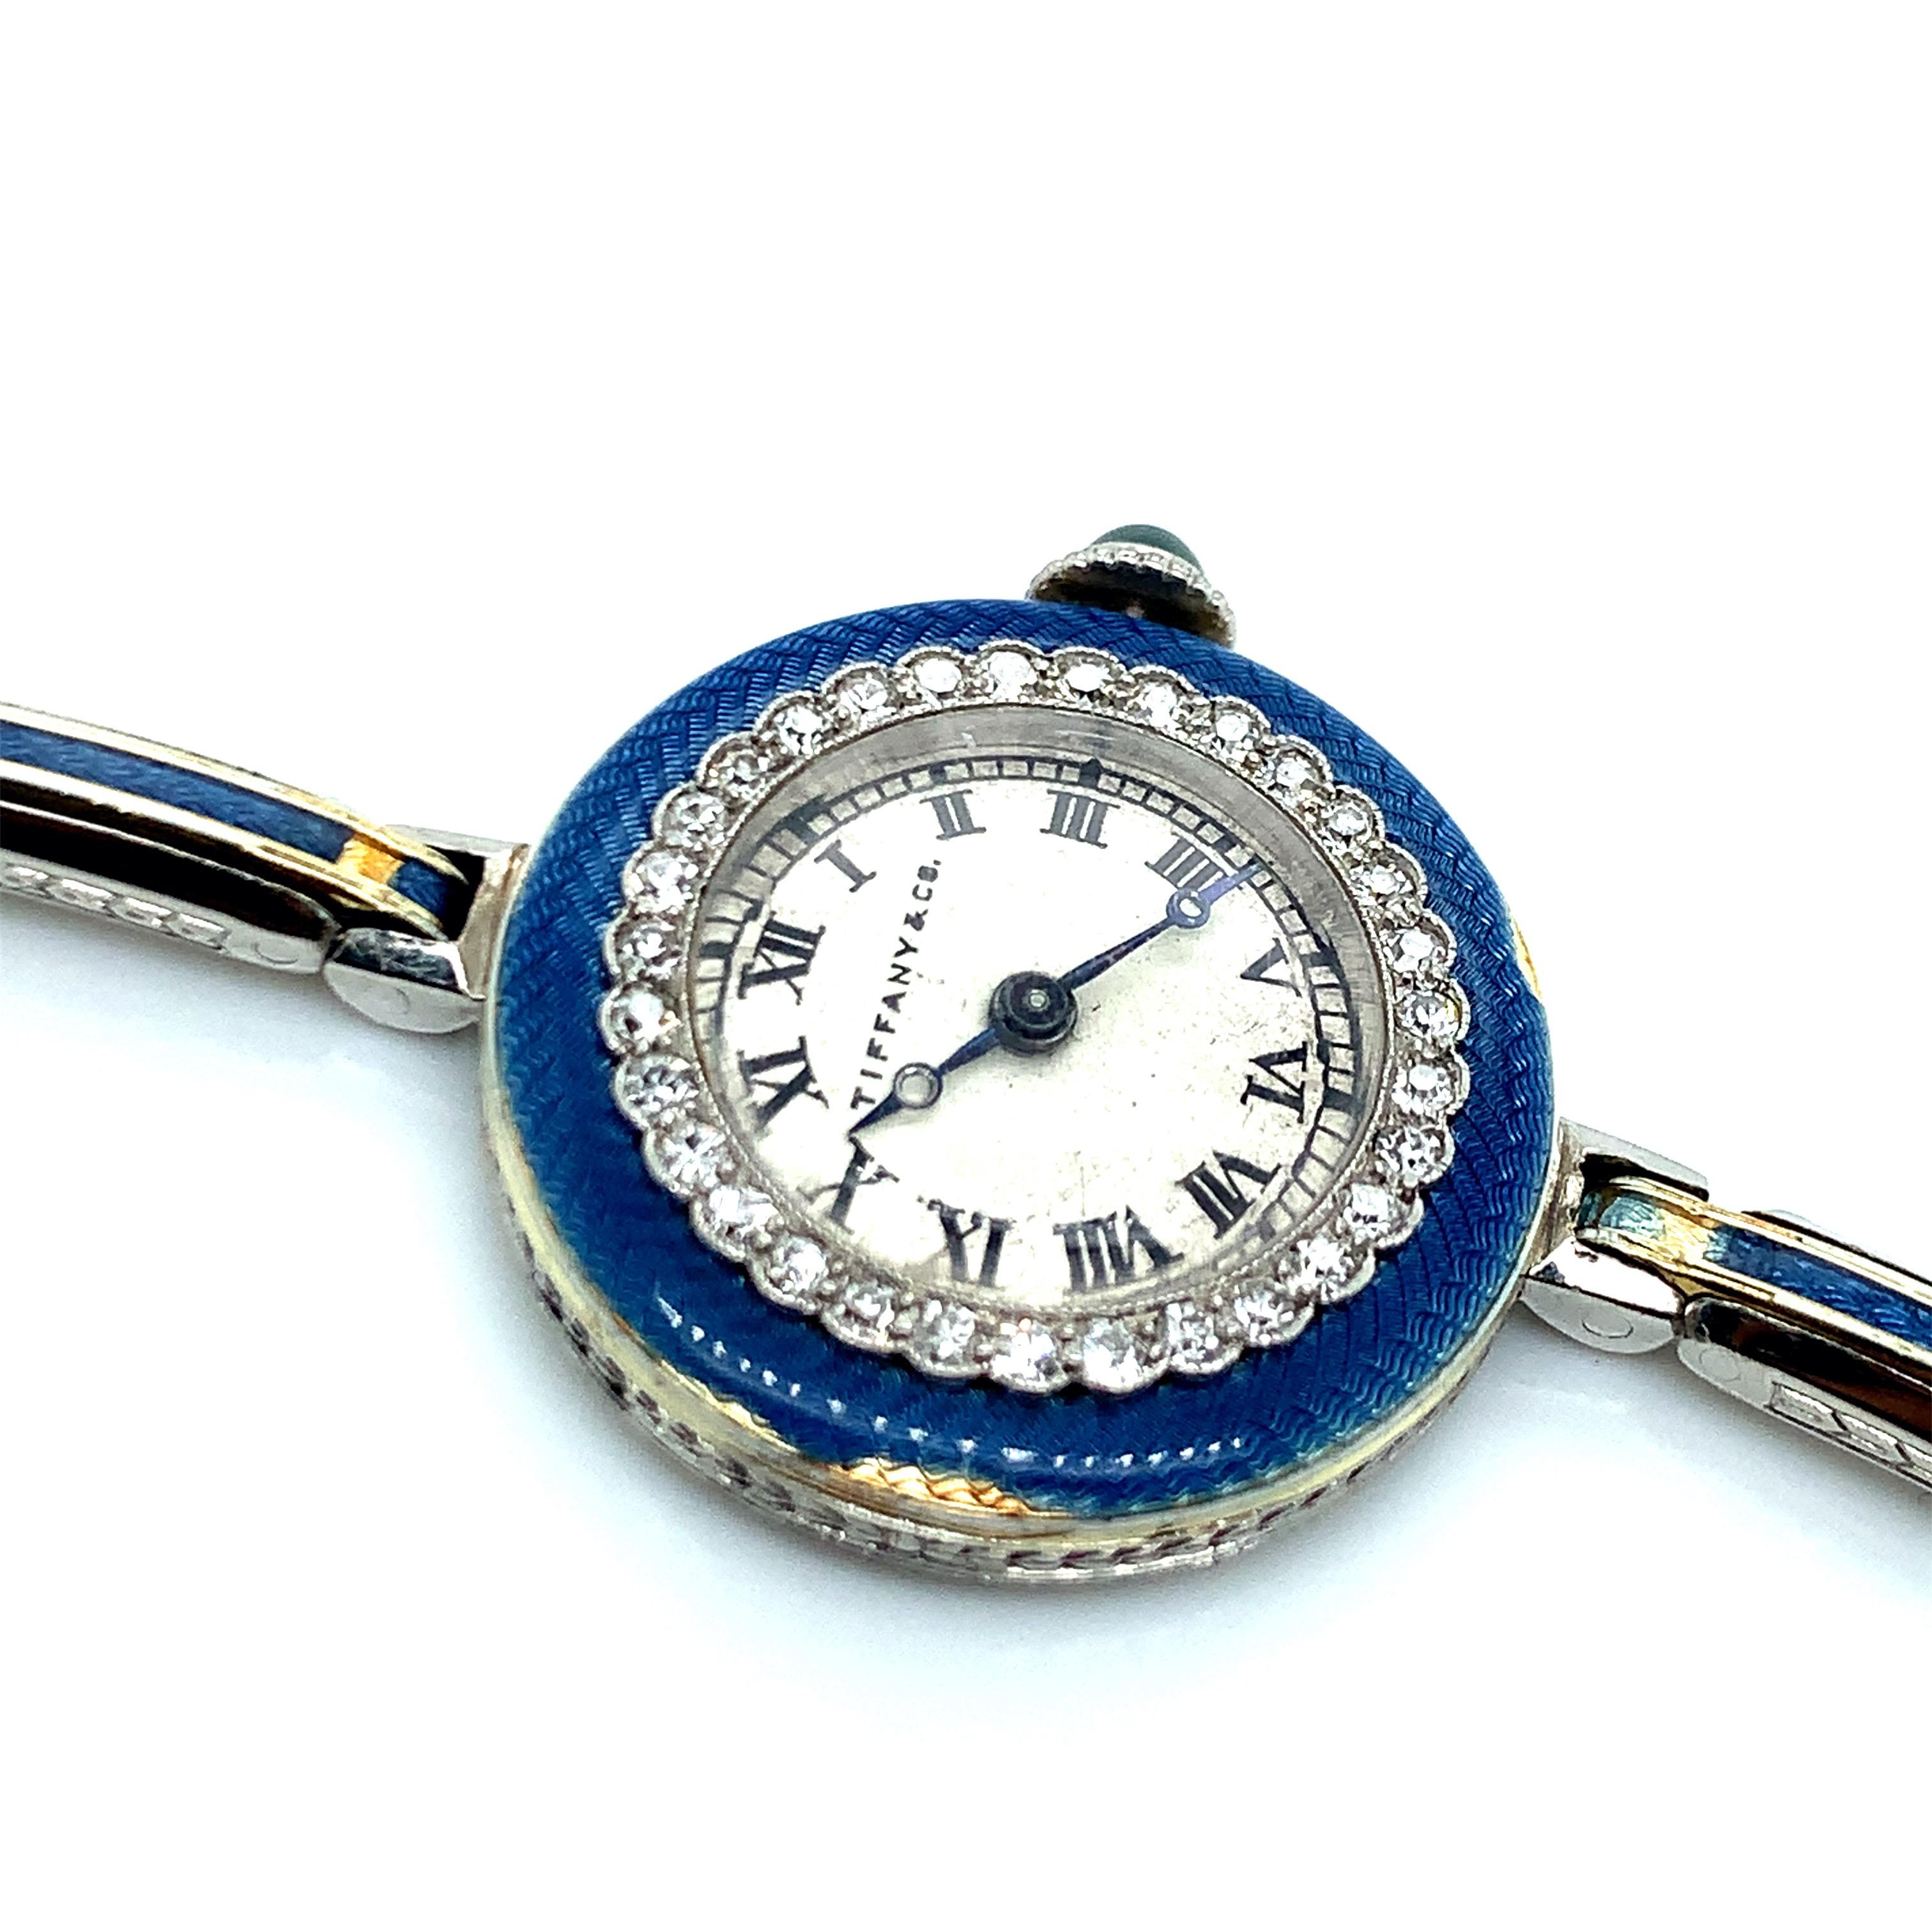 Tiffany & Co. Armbanduhr aus Platin und Gold mit Diamanten und Emaille, erweiterbar. Meylan-Uhrwerk mit 17 Steinen, 32 Diamanten mit einem Gewicht von etwa 1 Karat. Innerer Umfang: 6,25 Zoll. Kann auf 7,25 Zoll erweitert werden. Abmessungen des